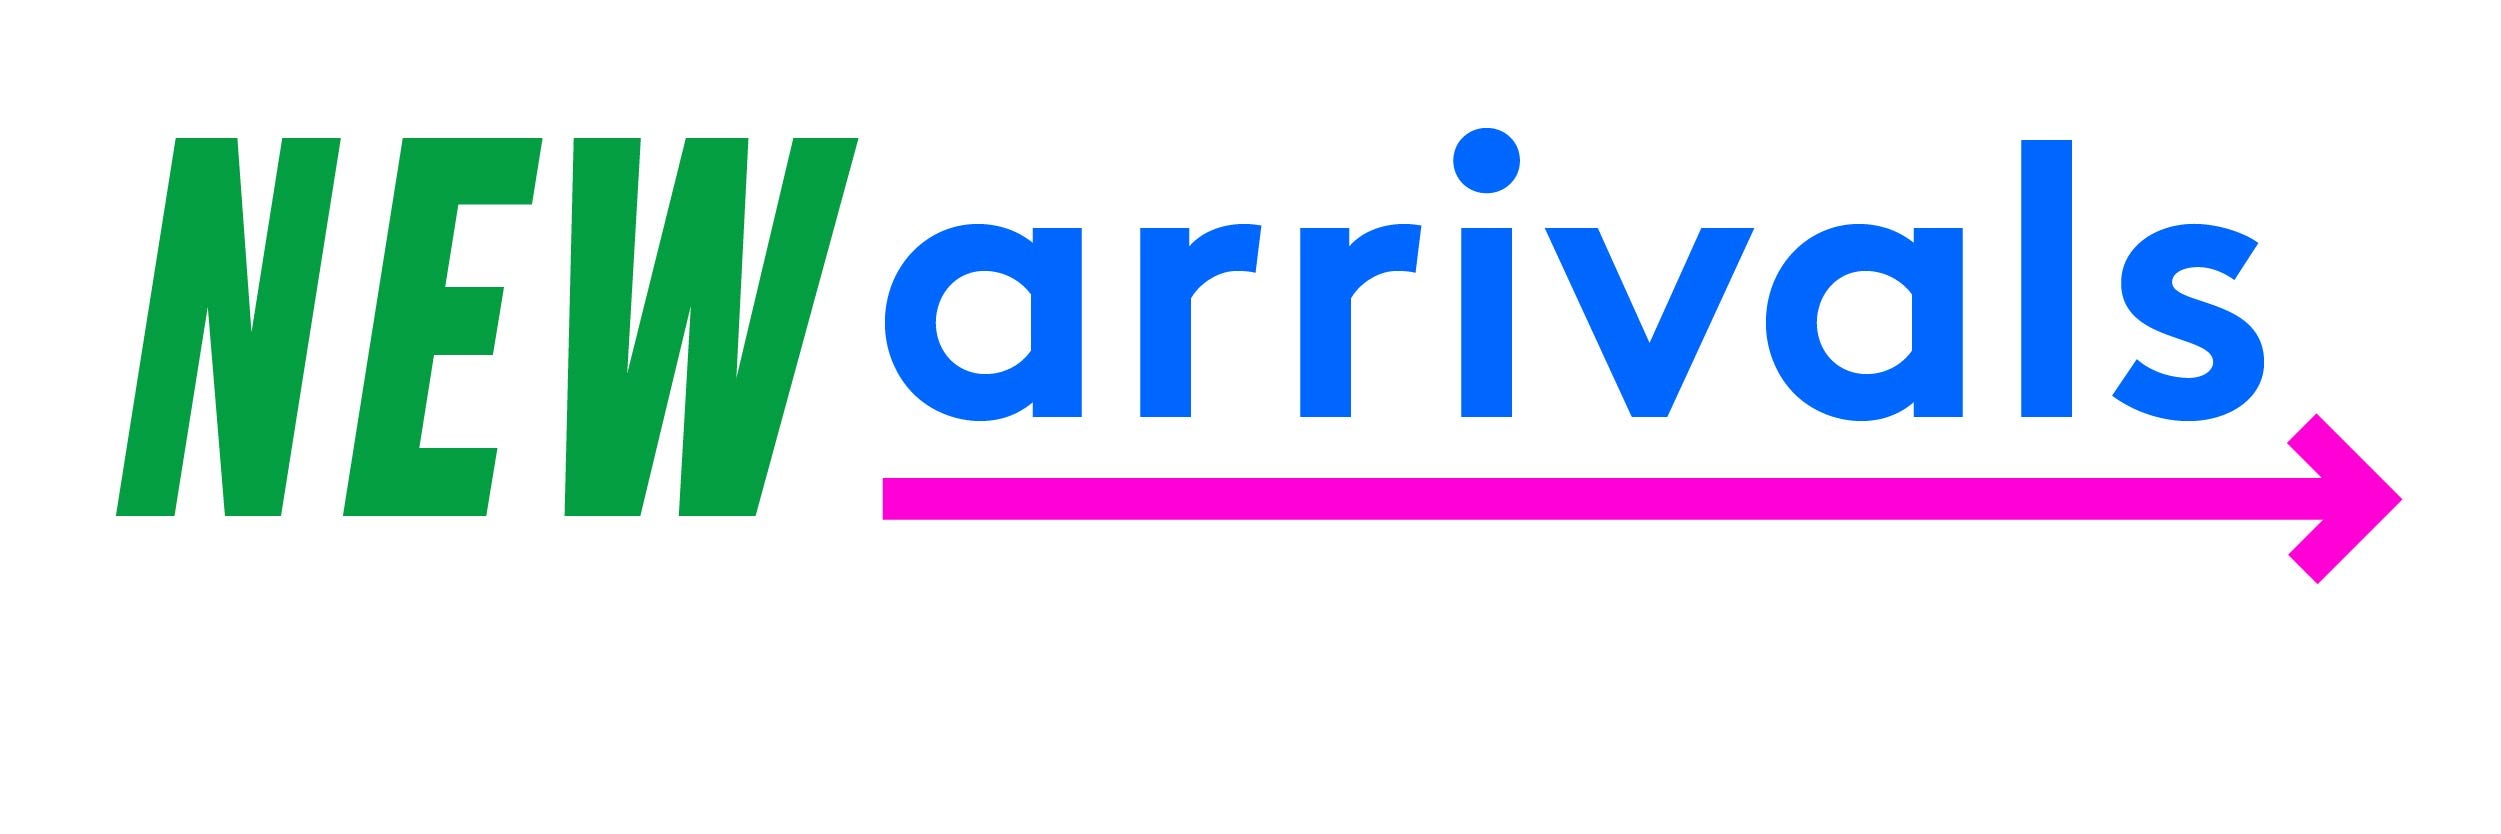 New Arrivals logo